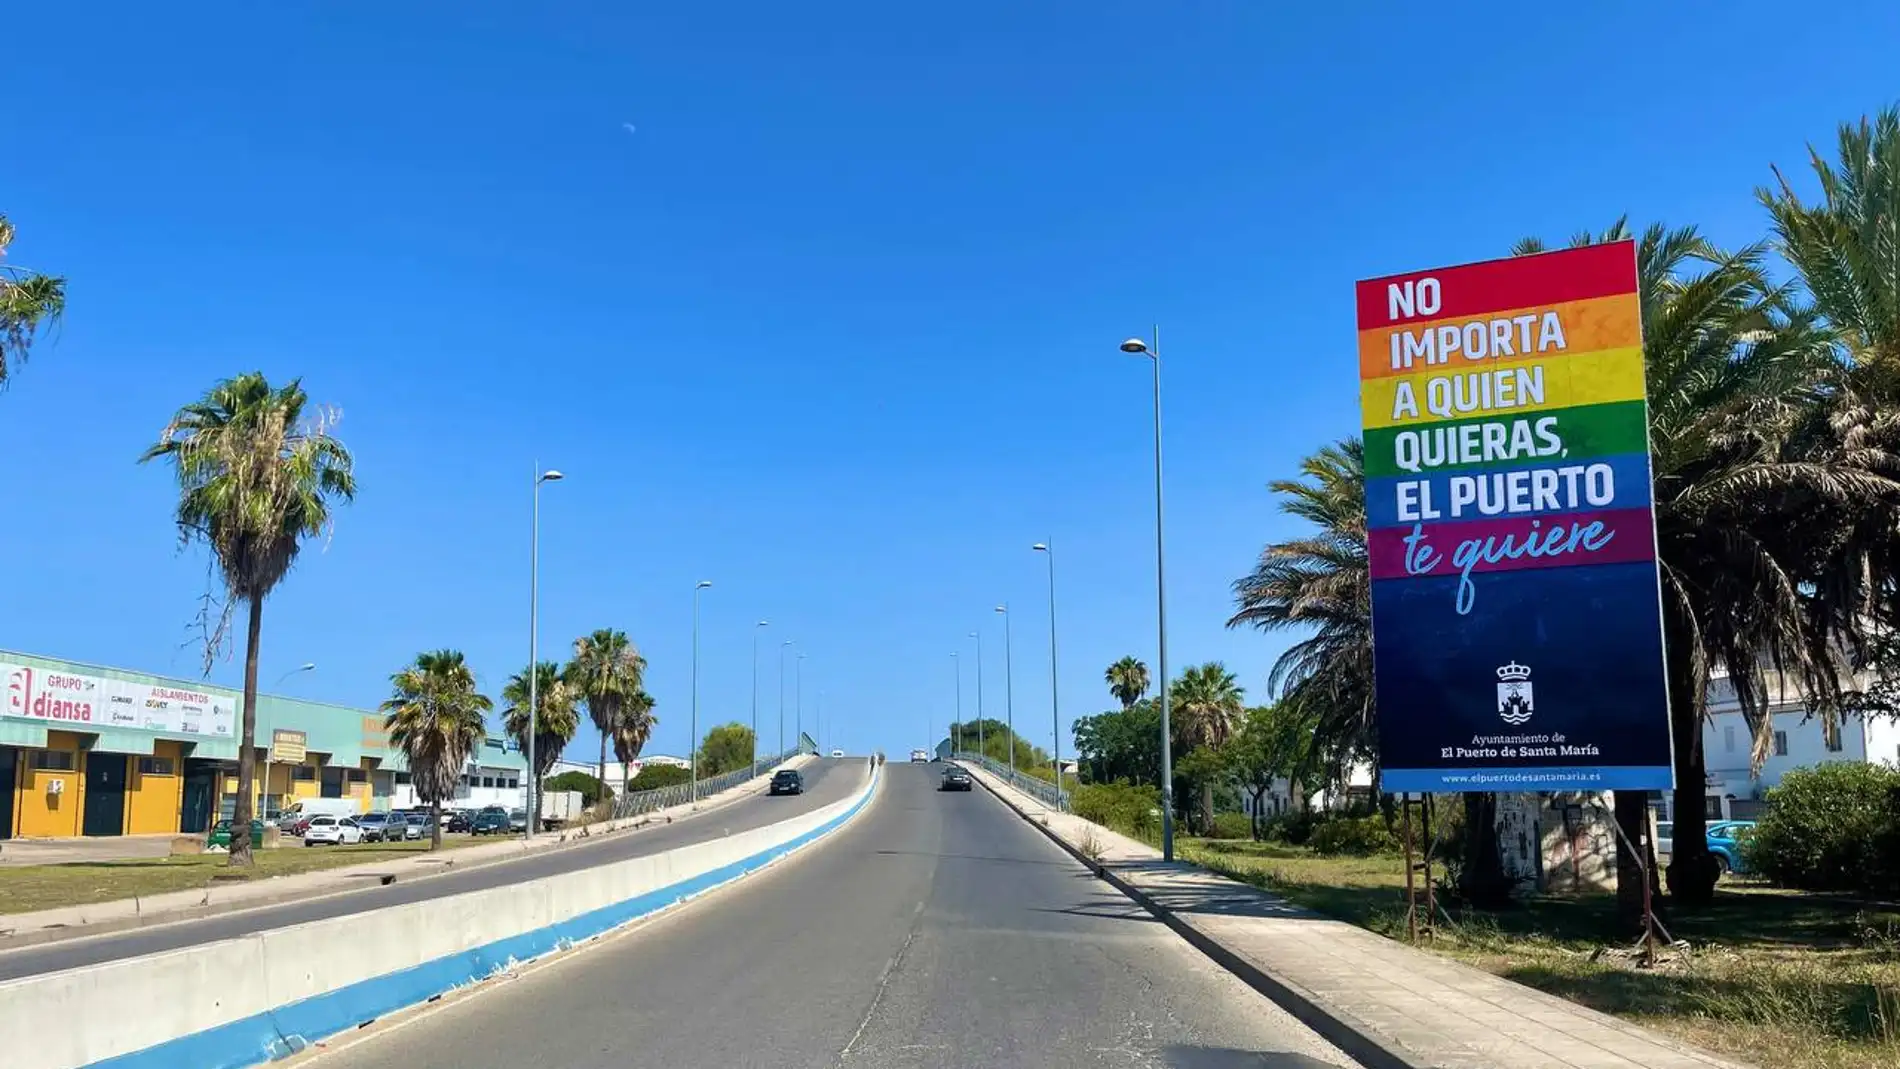 Entrada de la ciudad de El Puerto con el nuevo cartel